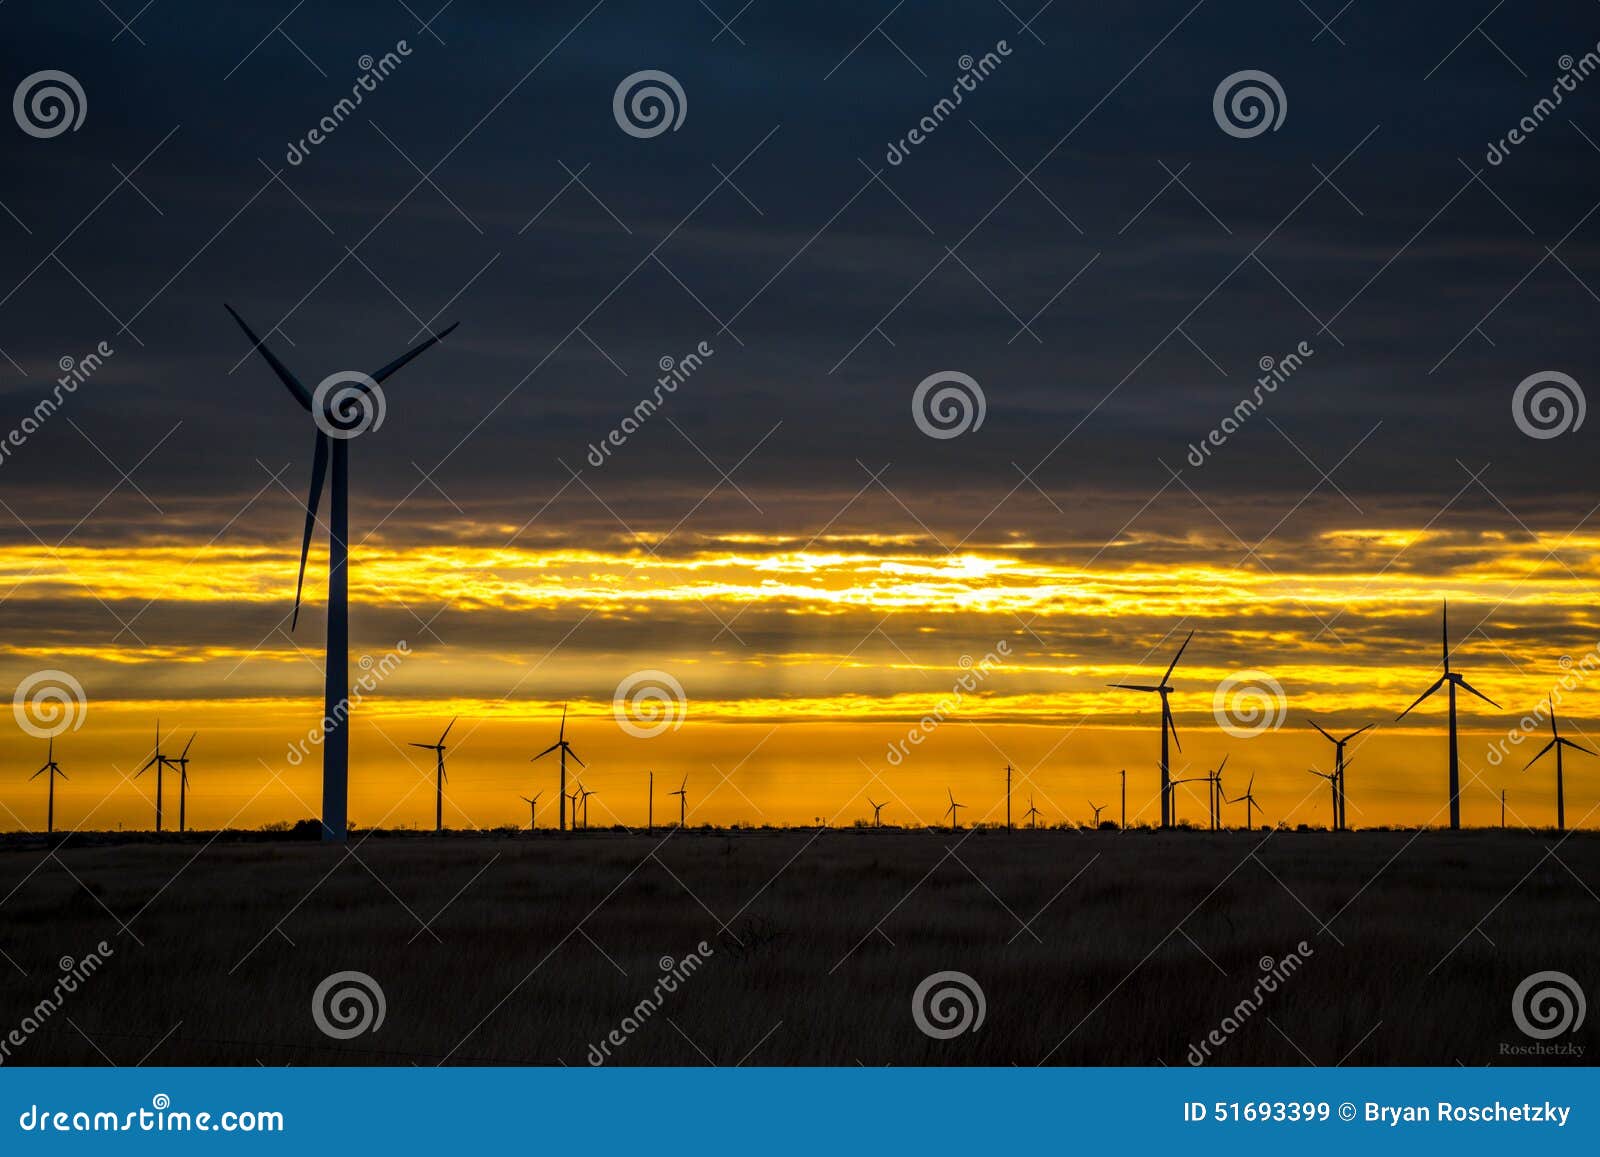 wind turbine farm west texas sunrise sunset